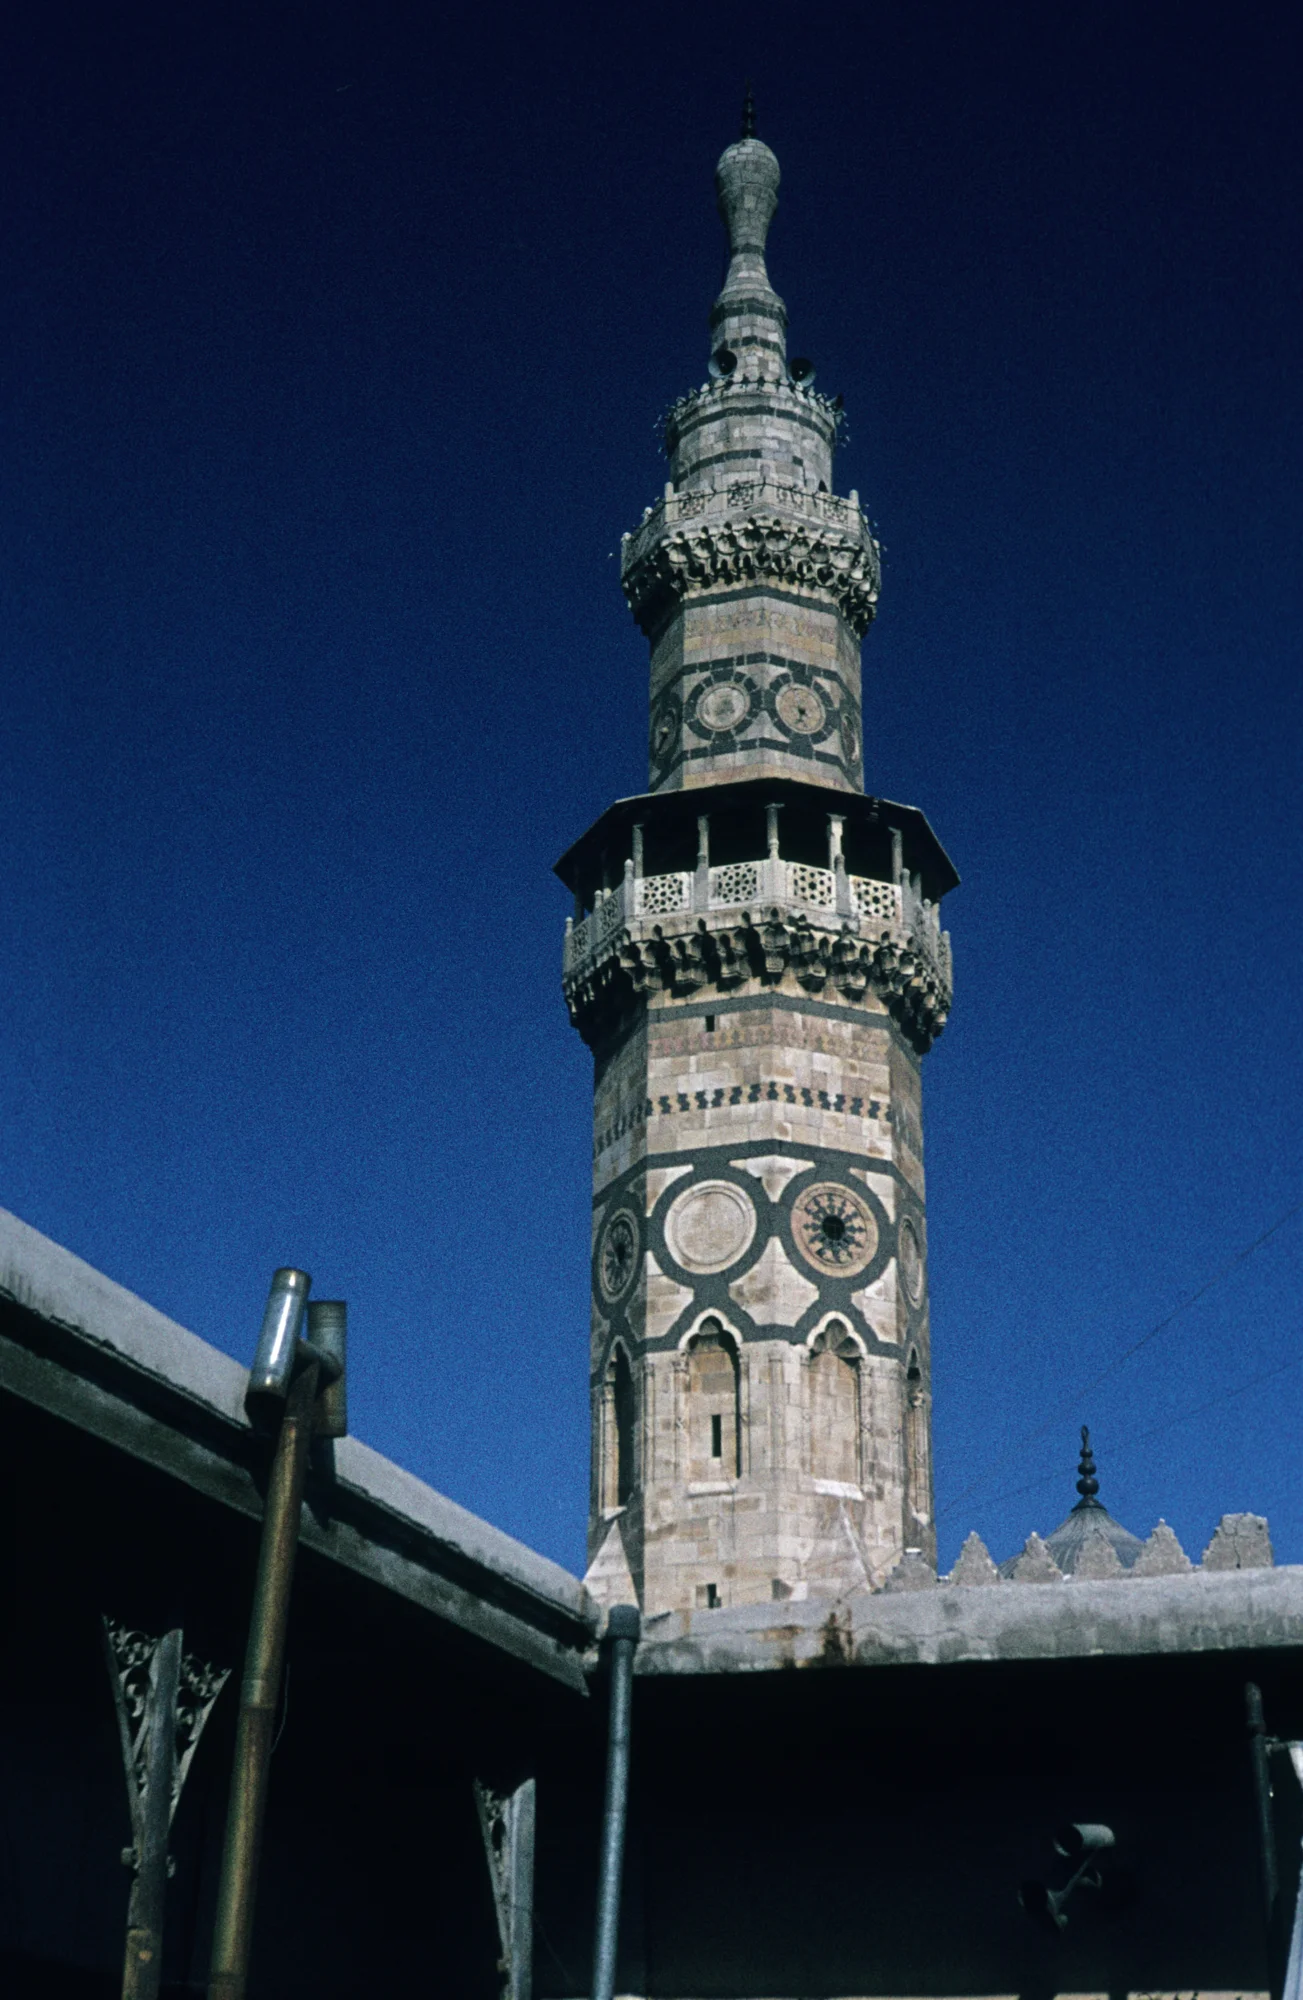 Umayyaden-Moschee, das reich dekorierte Qaytbay-Minarett